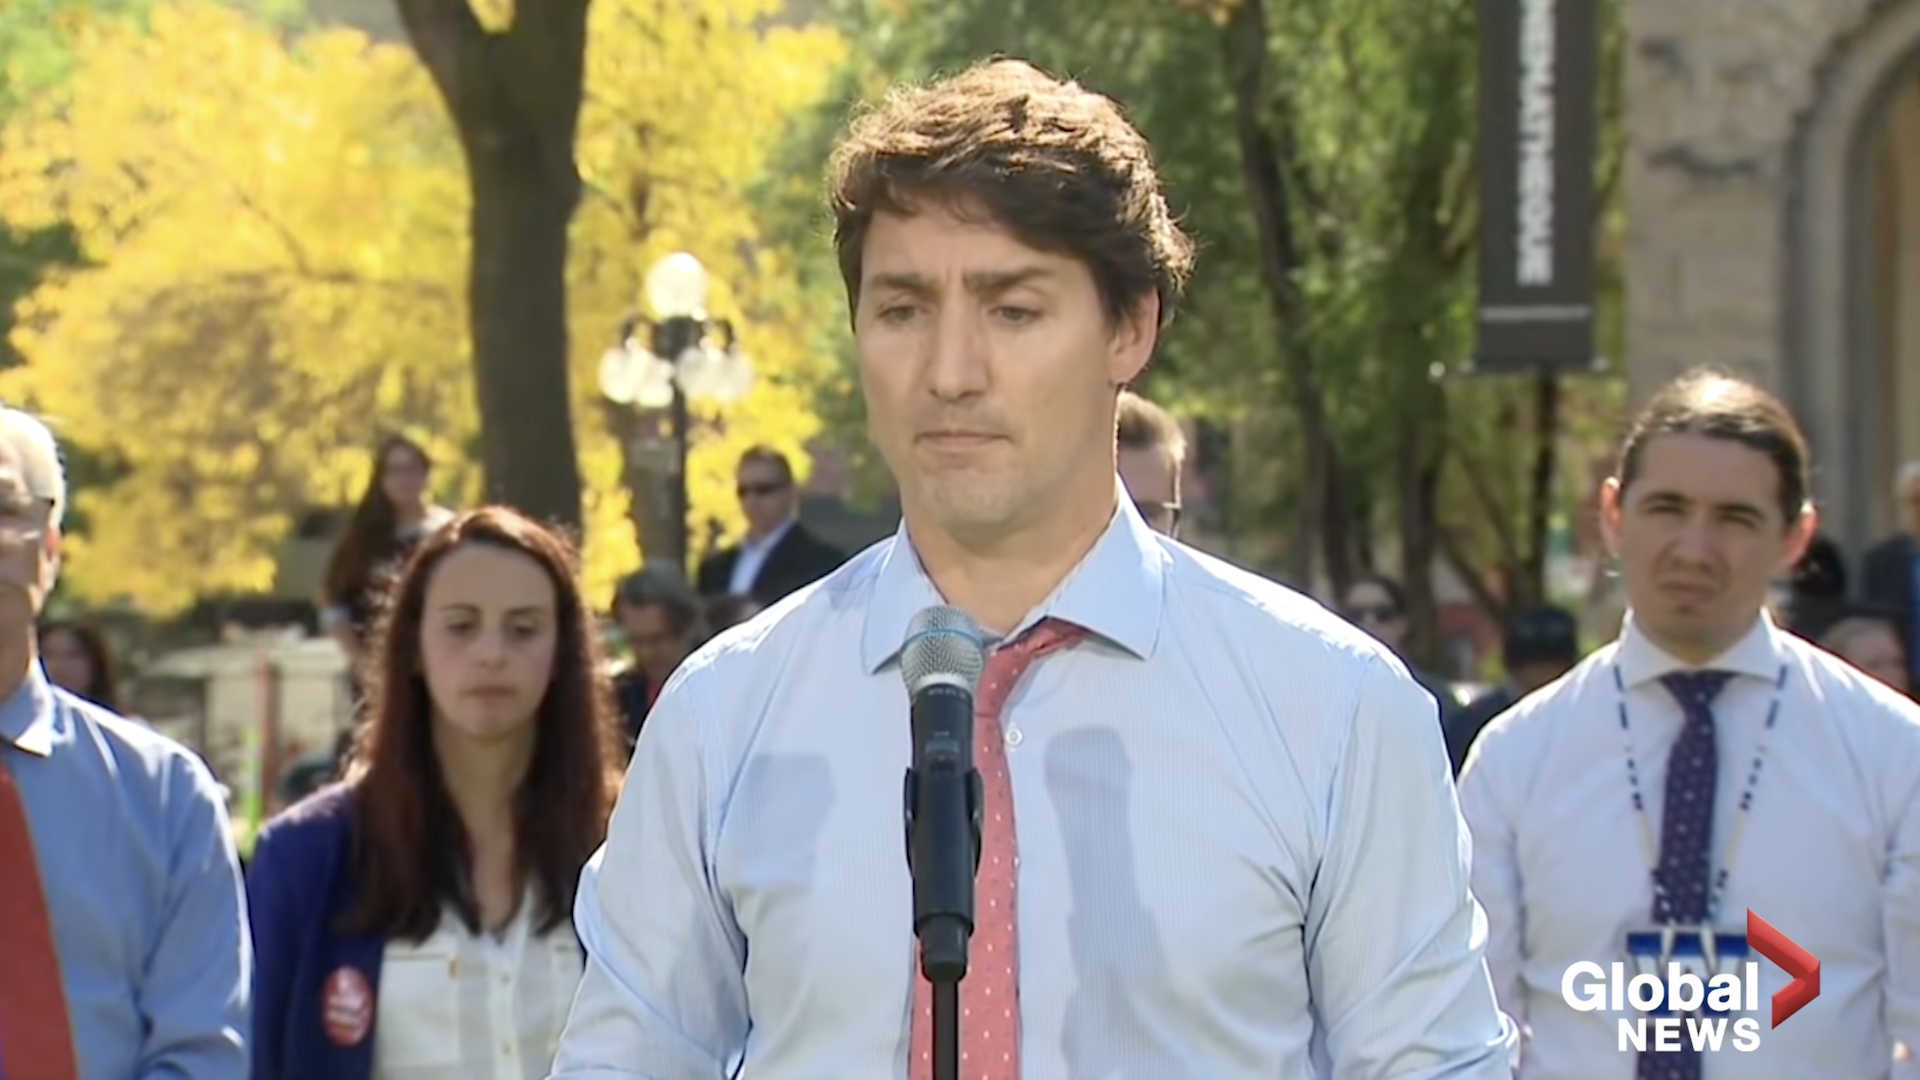 Trudeau luta contra as lágrimas ao relembrar 'conversas difíceis' com seus filhos por meio de fotos de blackface via Global News, YouTube